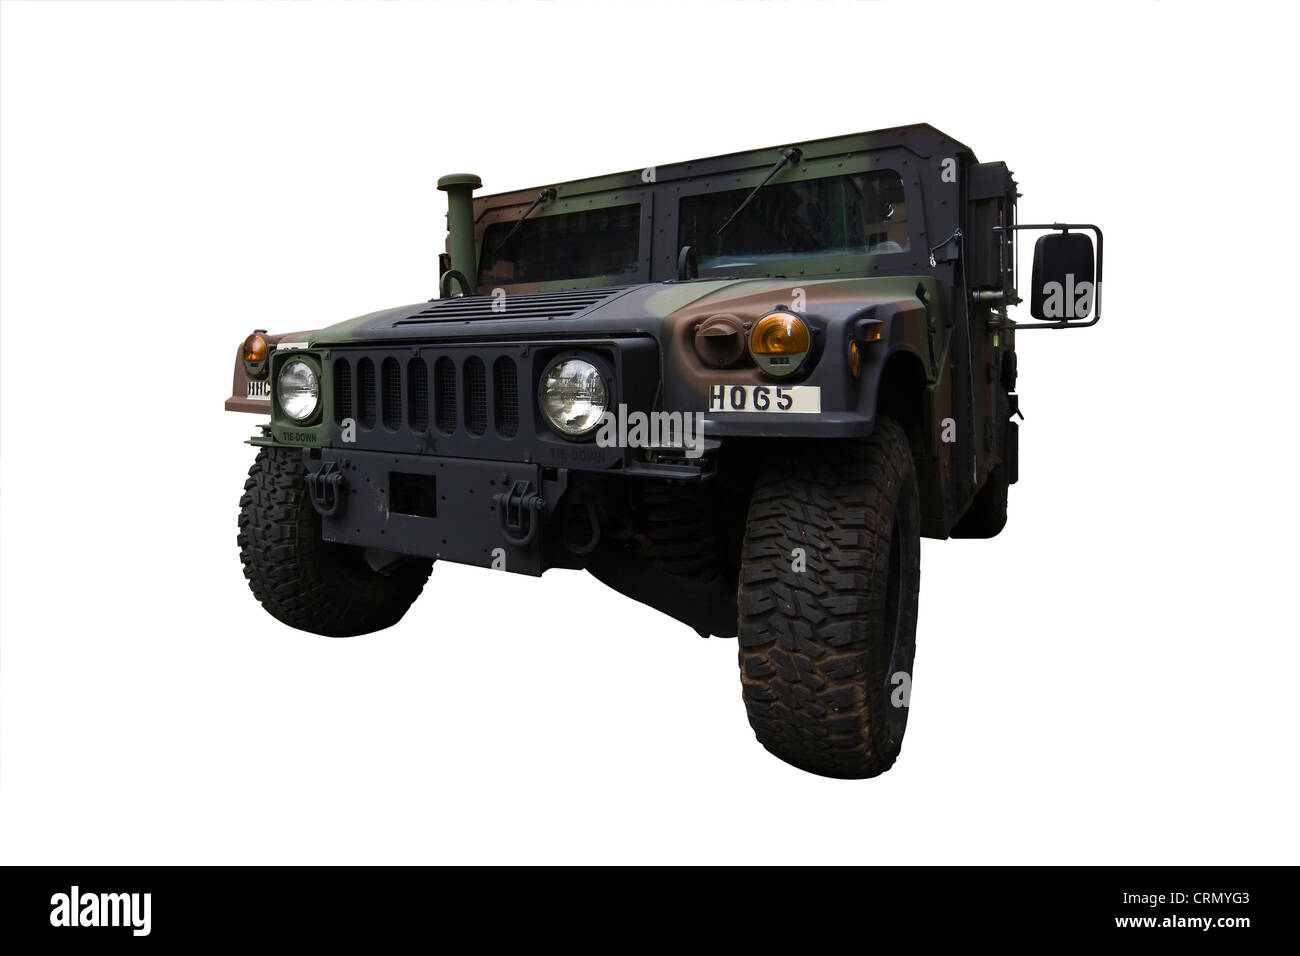 Schneiden Sie aus. High Mobility Multipurpose Wheeled Vehicle (HMMWV oder Humvee). Ein US-Militär 4WD Fahrzeug erstellt von AM General. Stockfoto